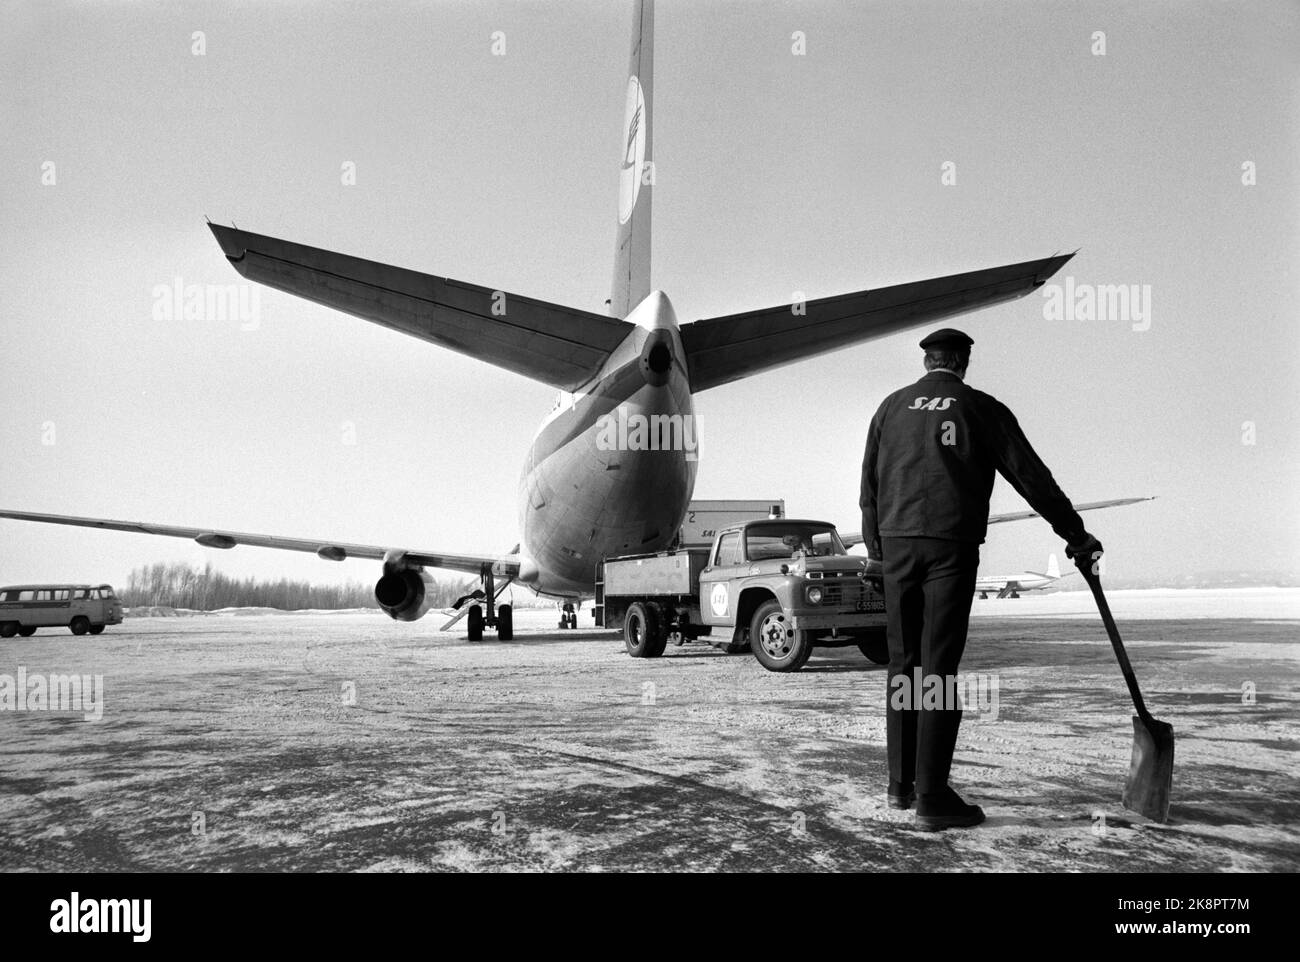 Fornebu Febbraio 1970 dall'Aeroporto di Oslo Fornebu. Cosa succede in un aeroporto durante il giorno? I voli sono pronti per la partenza. Uomo con una pala sulla pista. Foto: Per Ervik / corrente / NTB Foto Stock